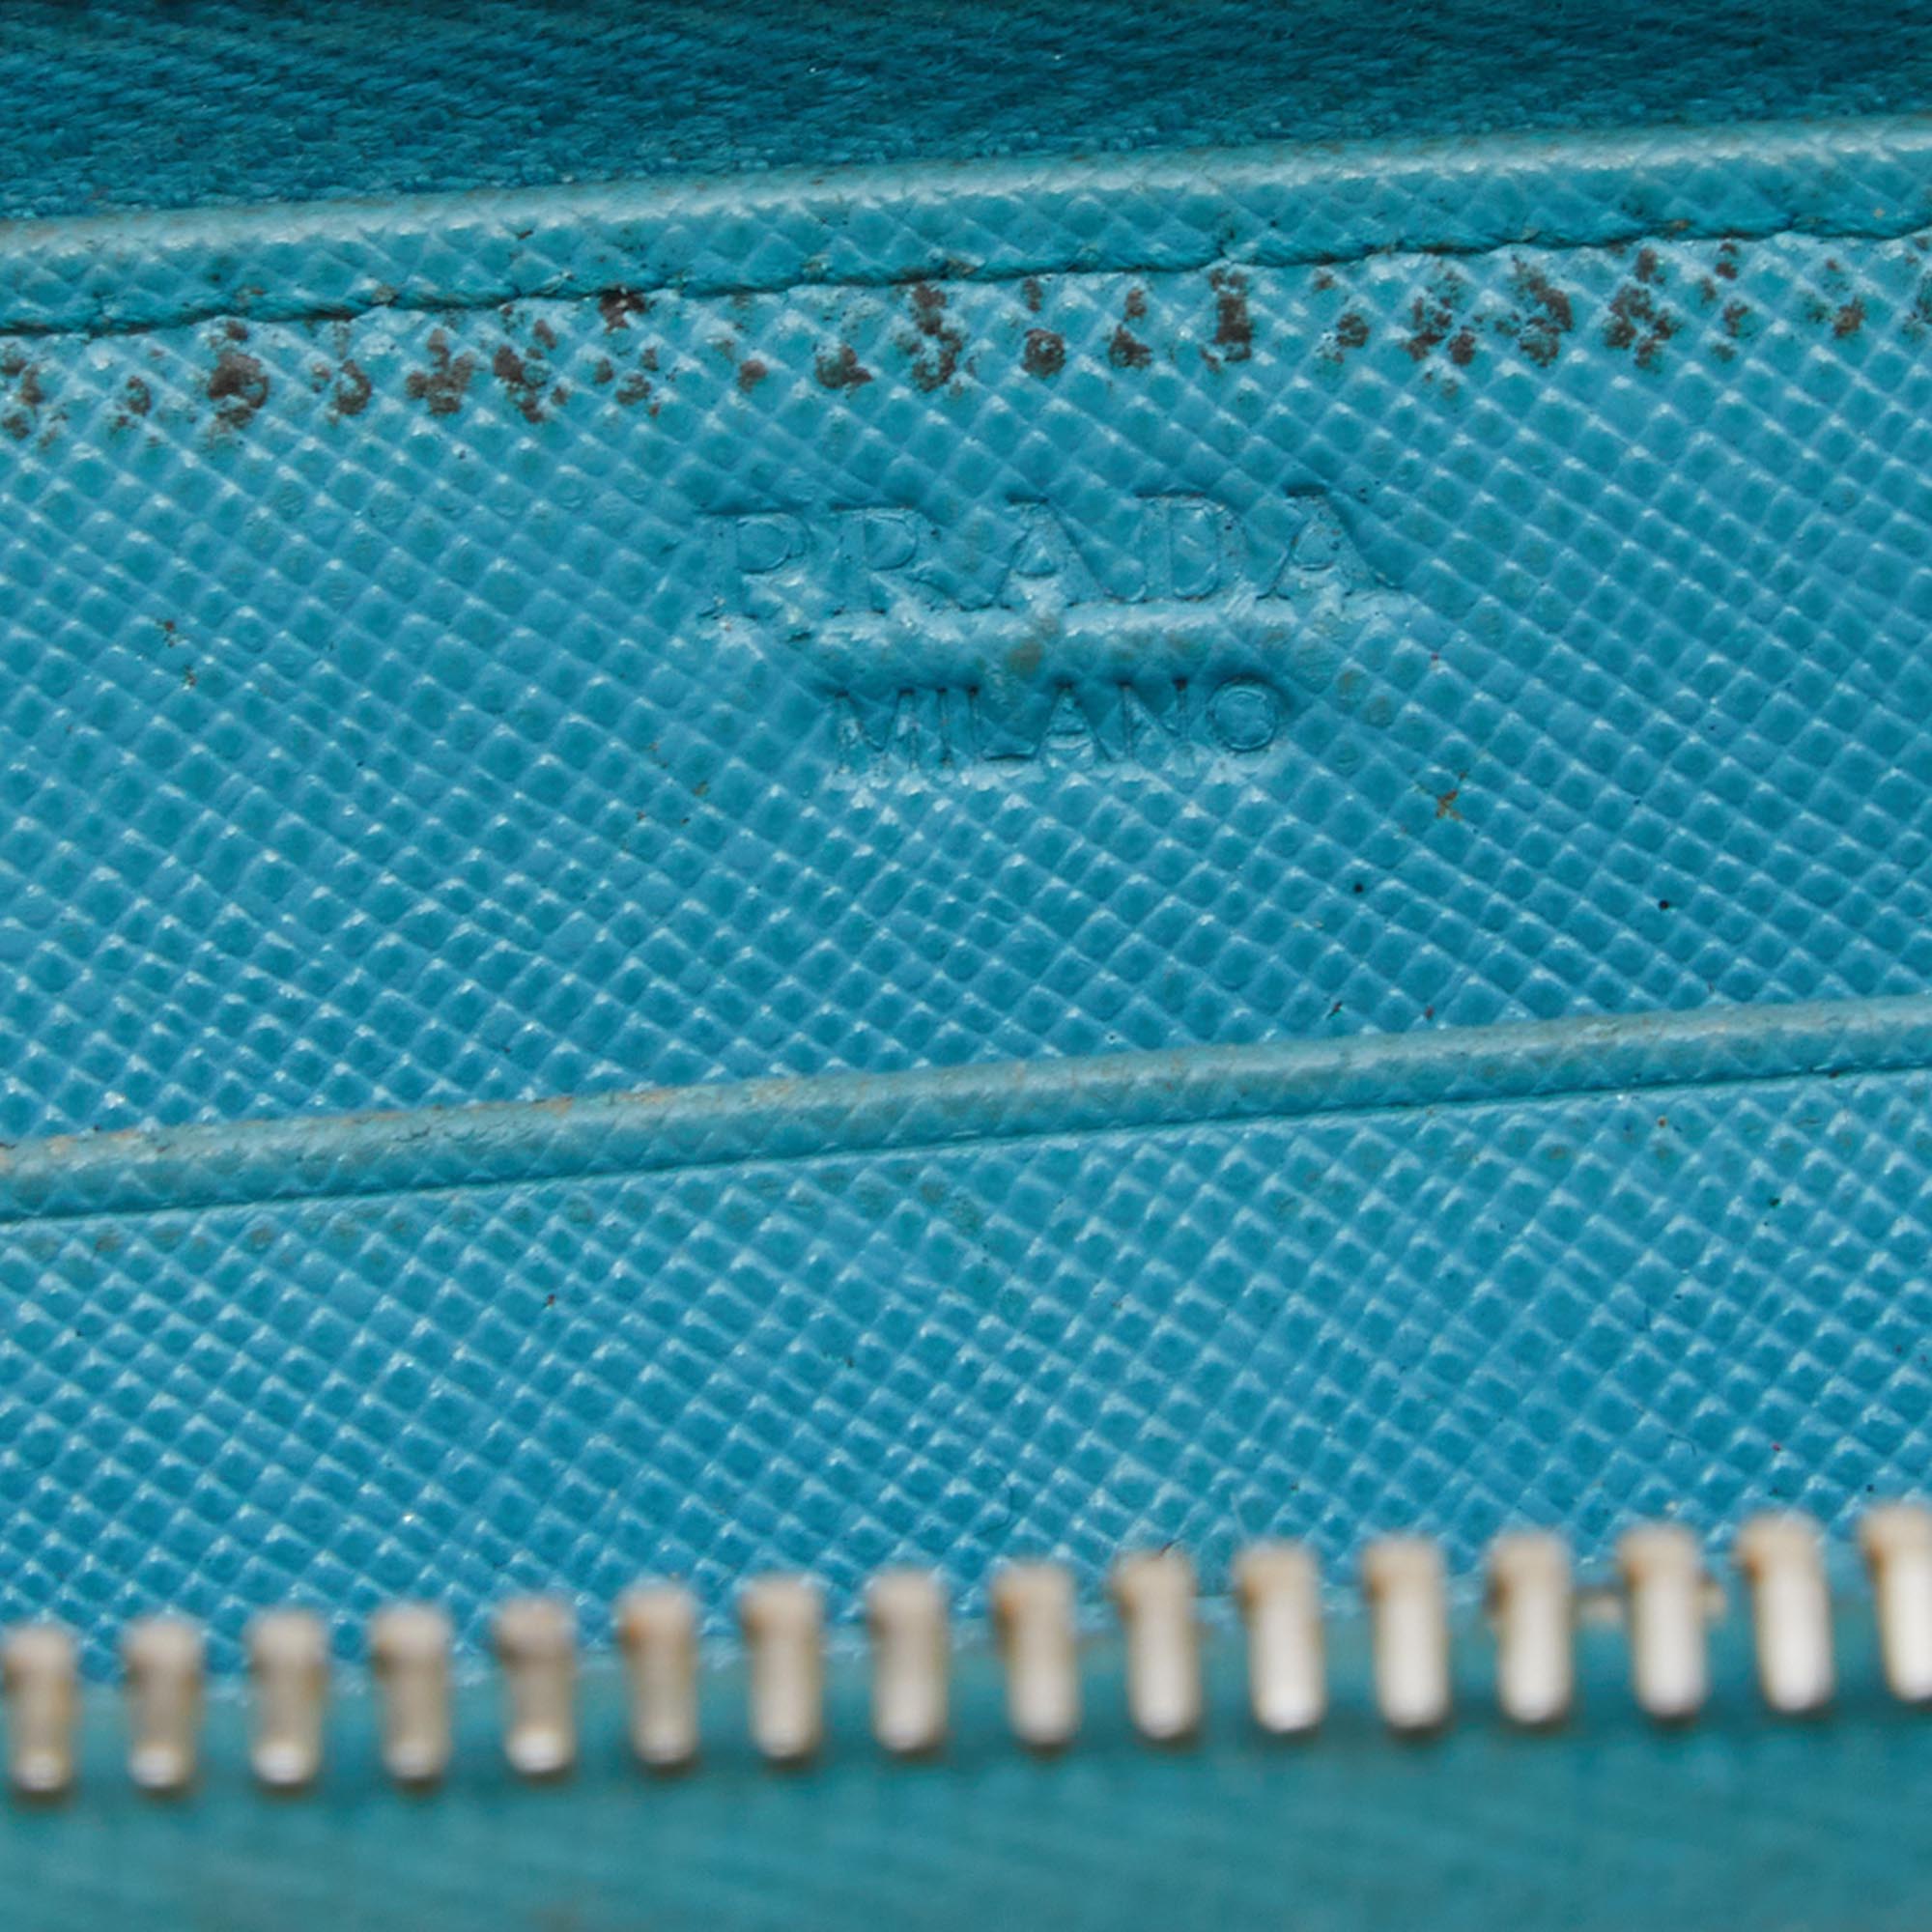 Prada Blue Saffiano Lux Leather Zip Around Wallet